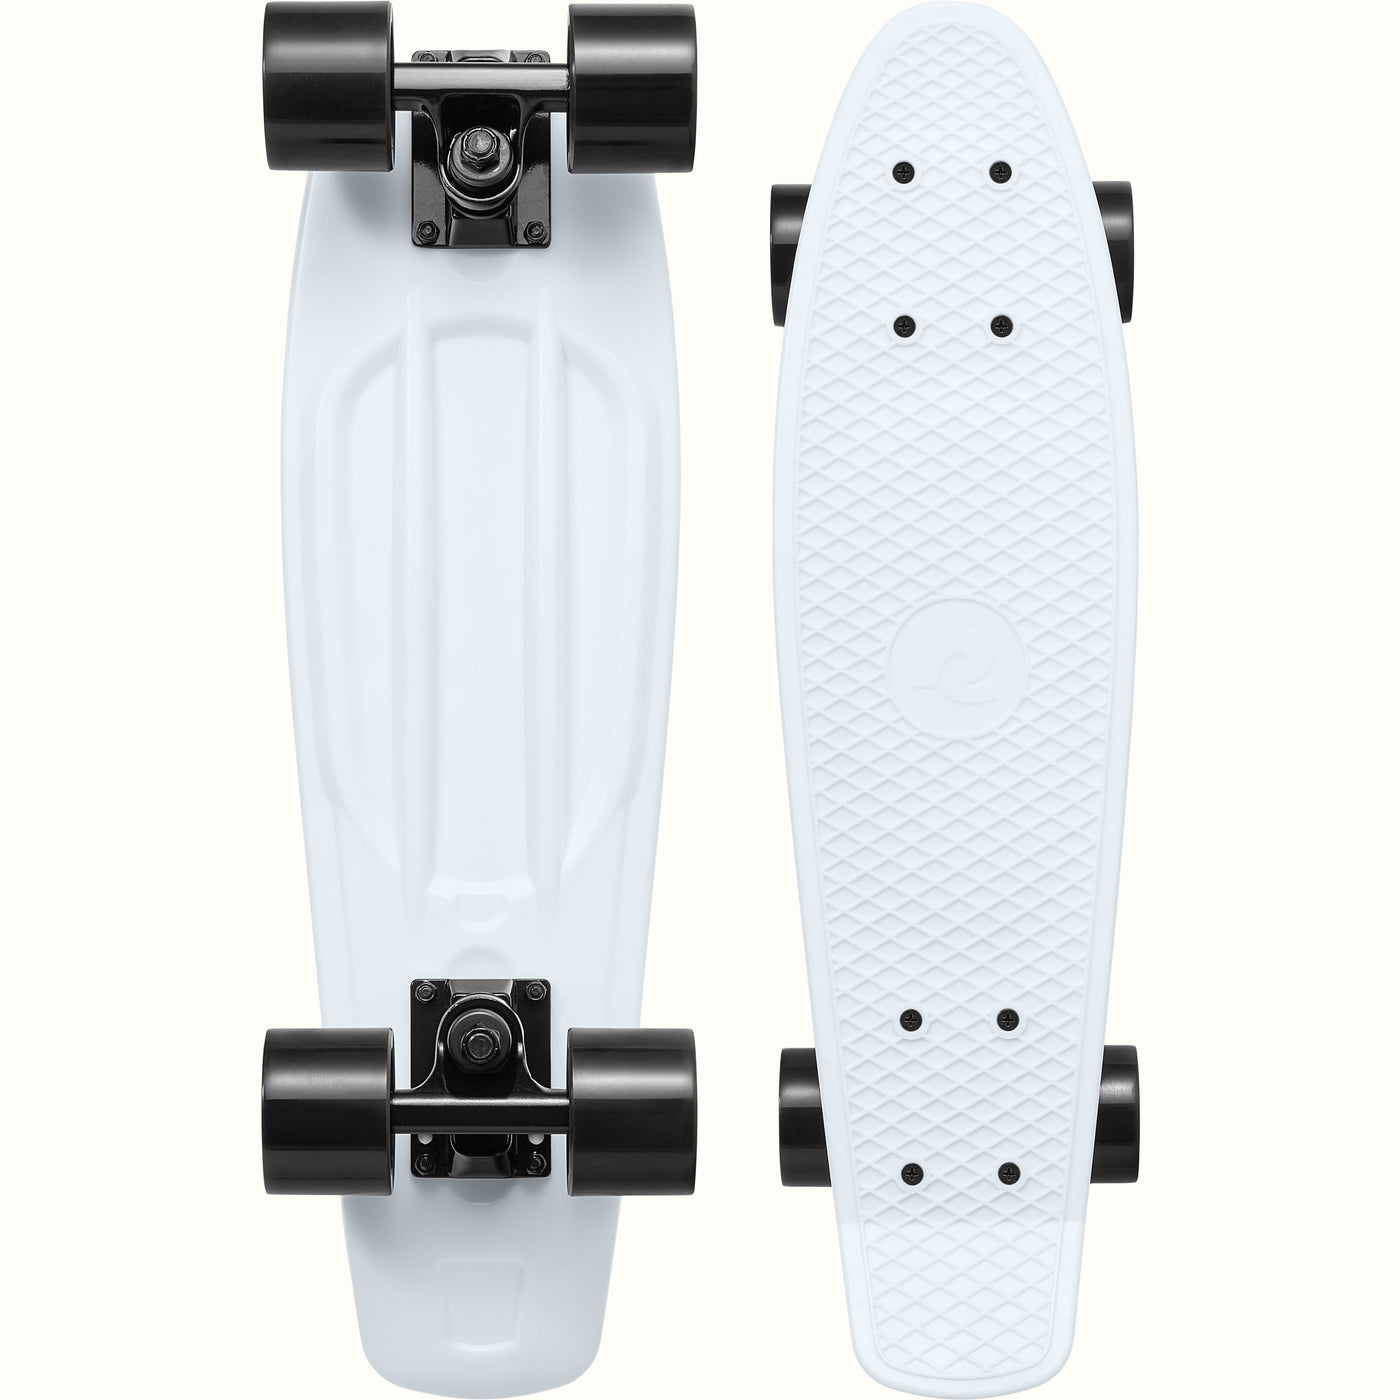 Quip Mini Cruiser Skateboard | Domino